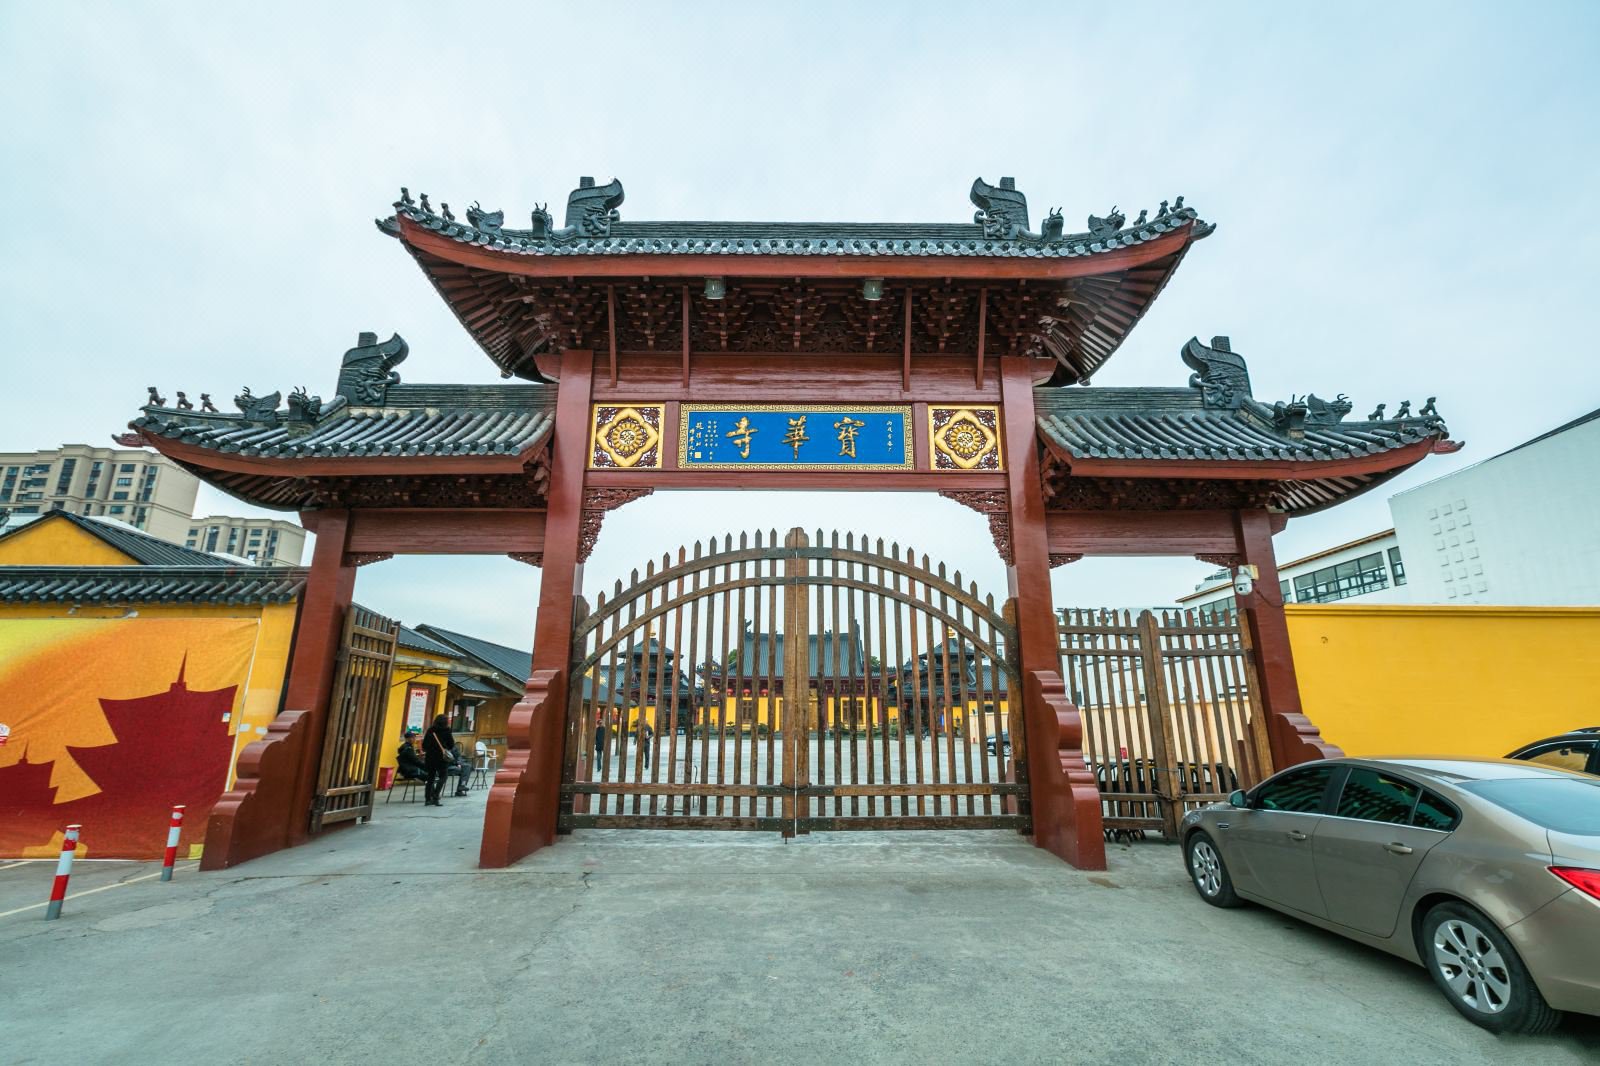 上海寺庙简介20座， 据说前十座祈福灵验，附上海168座寺庙名录